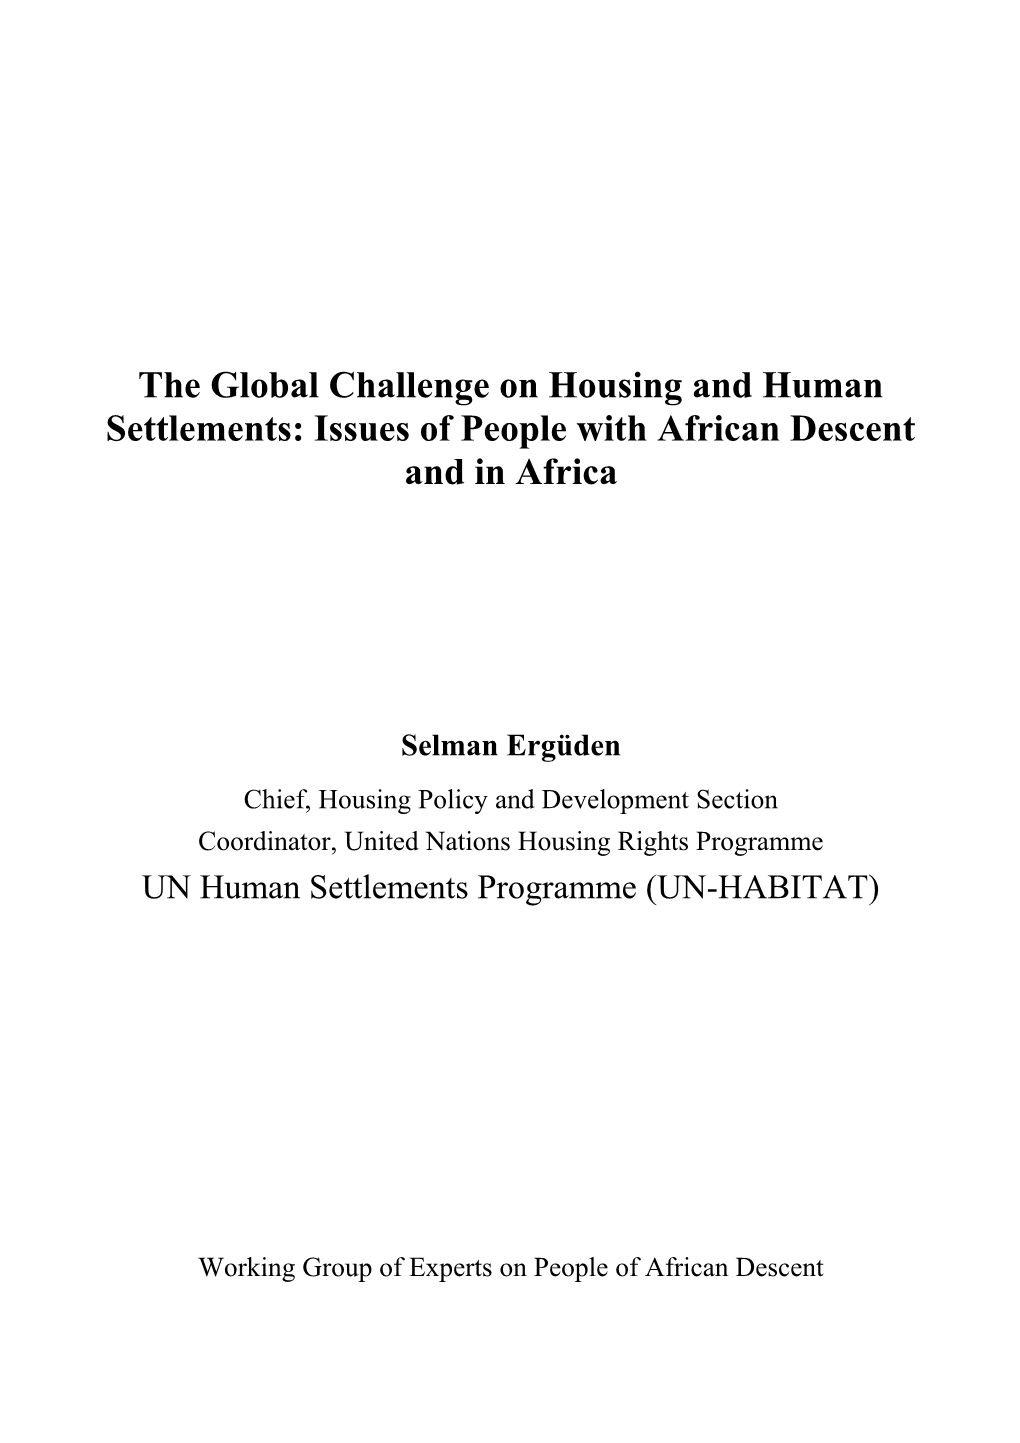 Housing And Human Settlements S Erguden